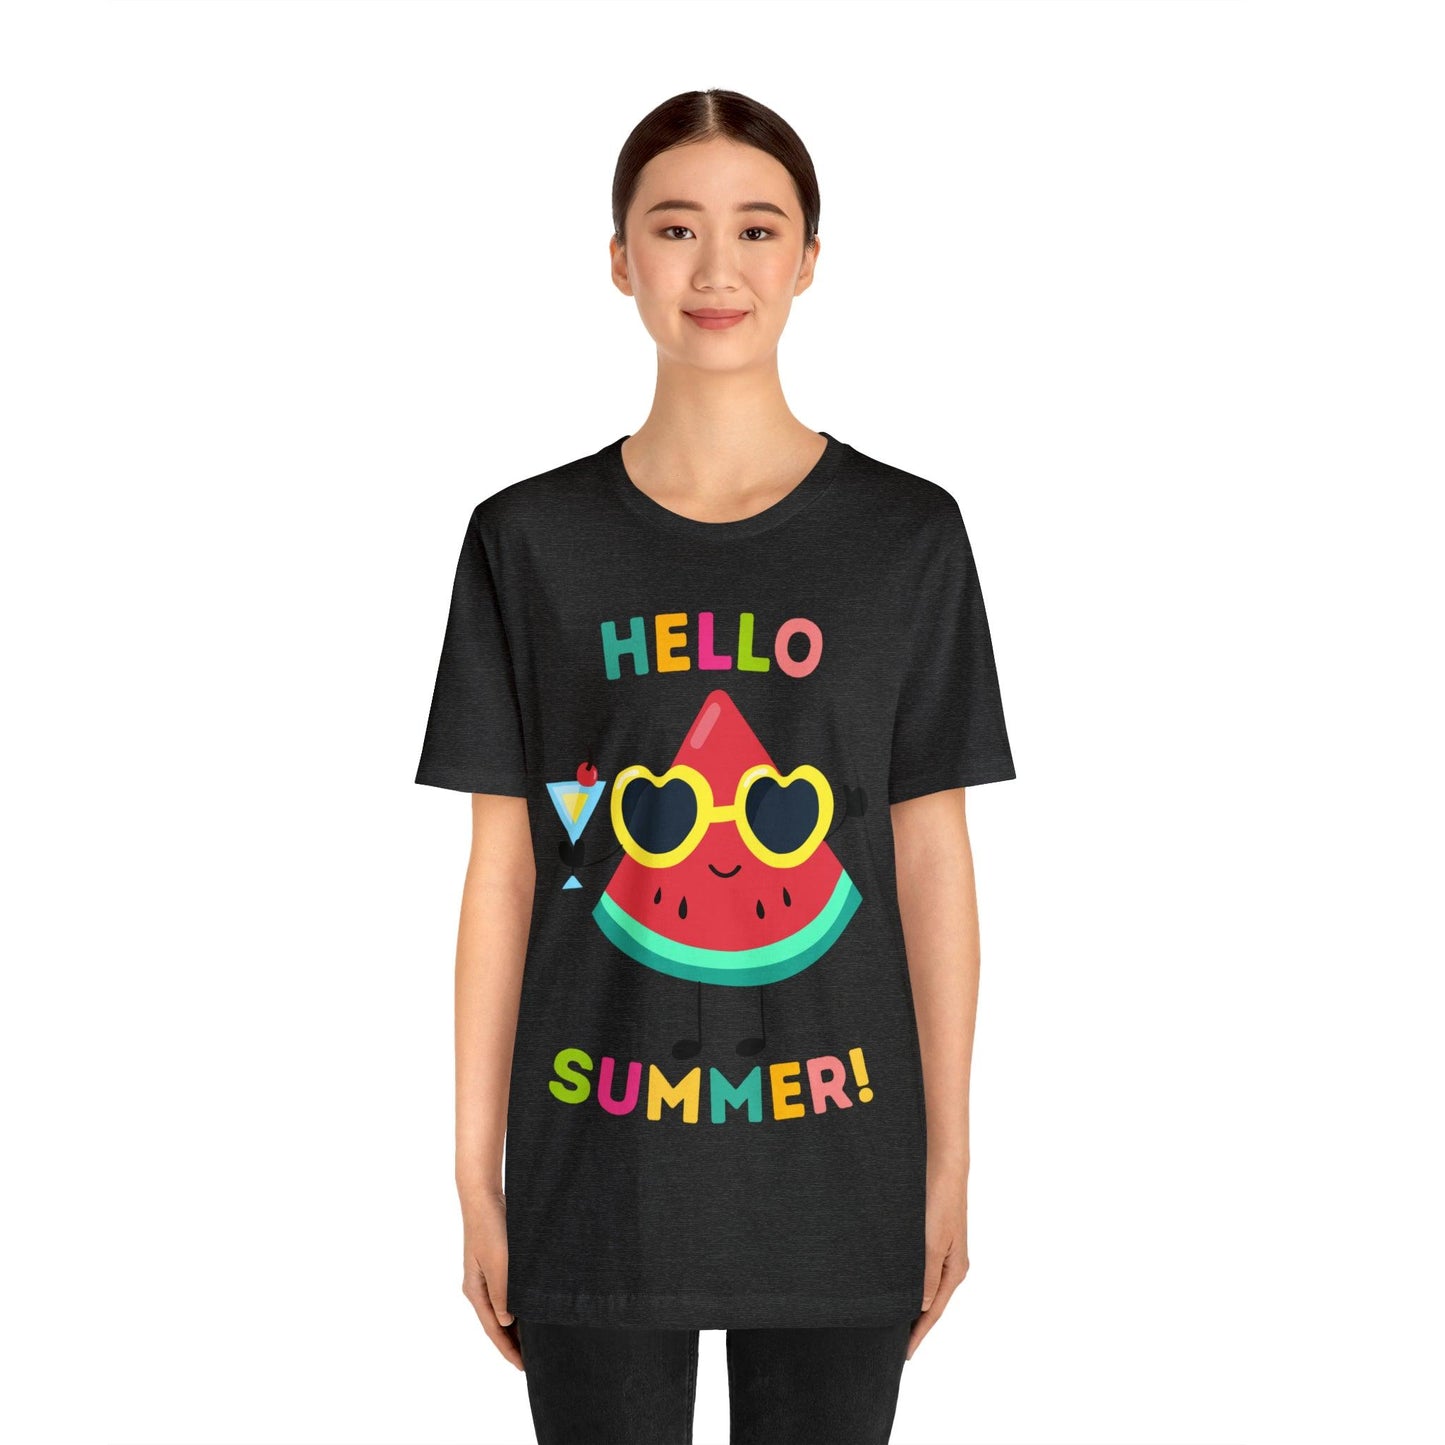 Hello Summer Shirt, Funny Summer Casual Top Tee,Unisex Summer Tshirt Ladies